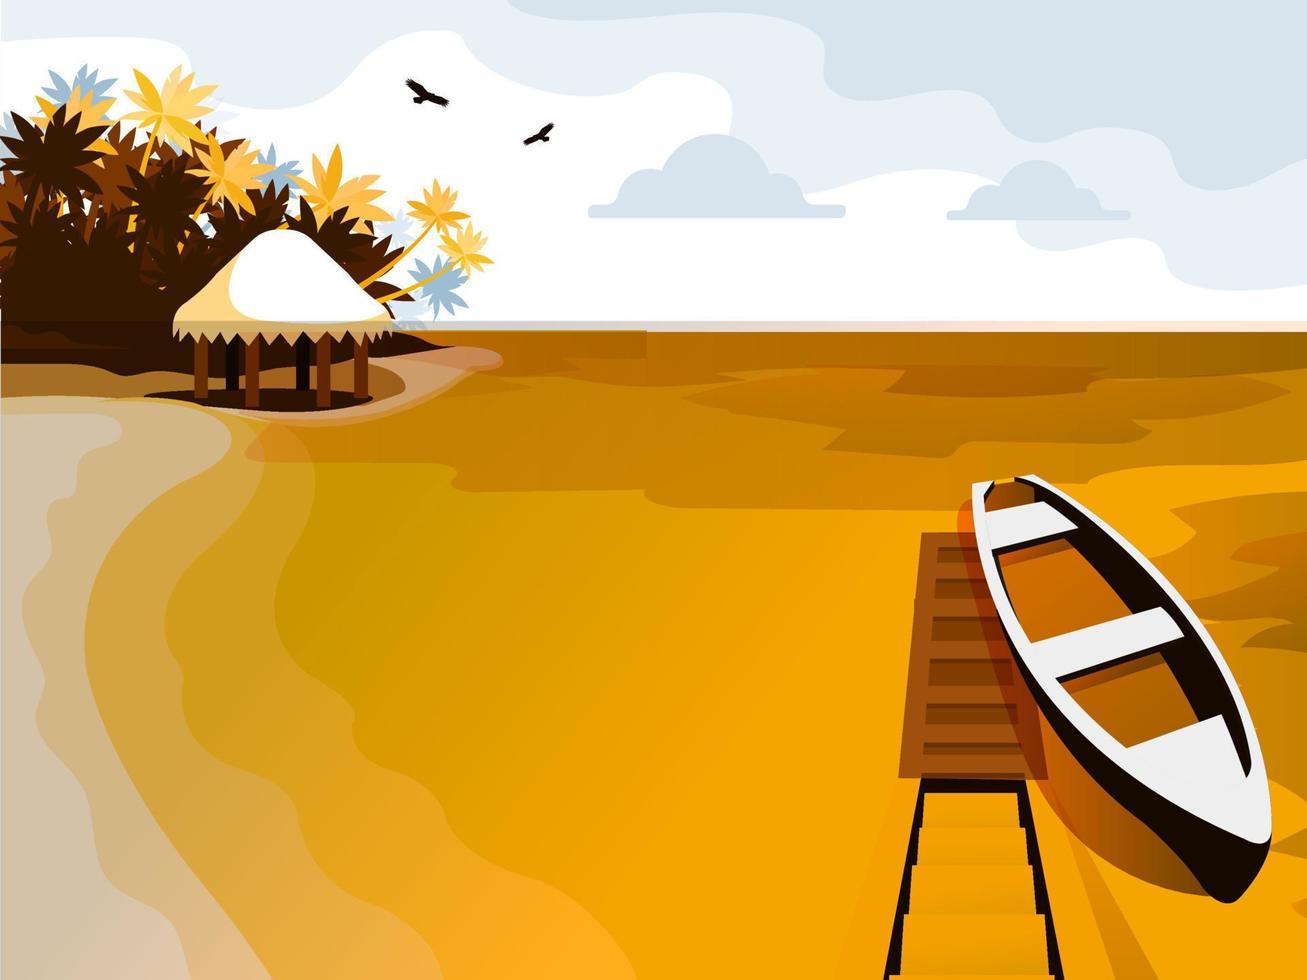 Bateau plage vue paysage mer vacances vacances tropicales vector illustration